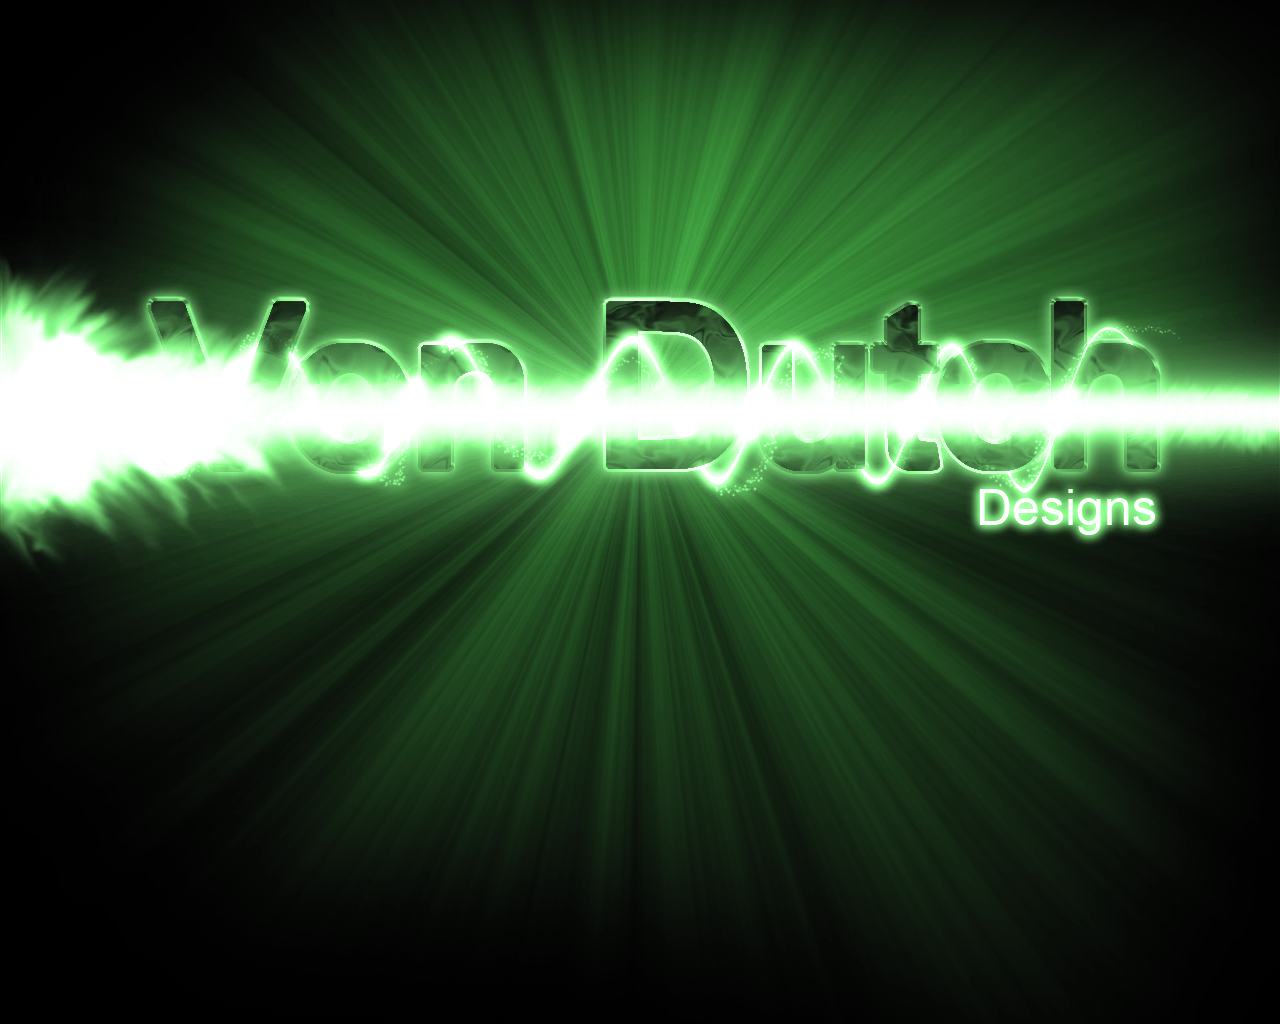 Von Dutch designs. with lasers!